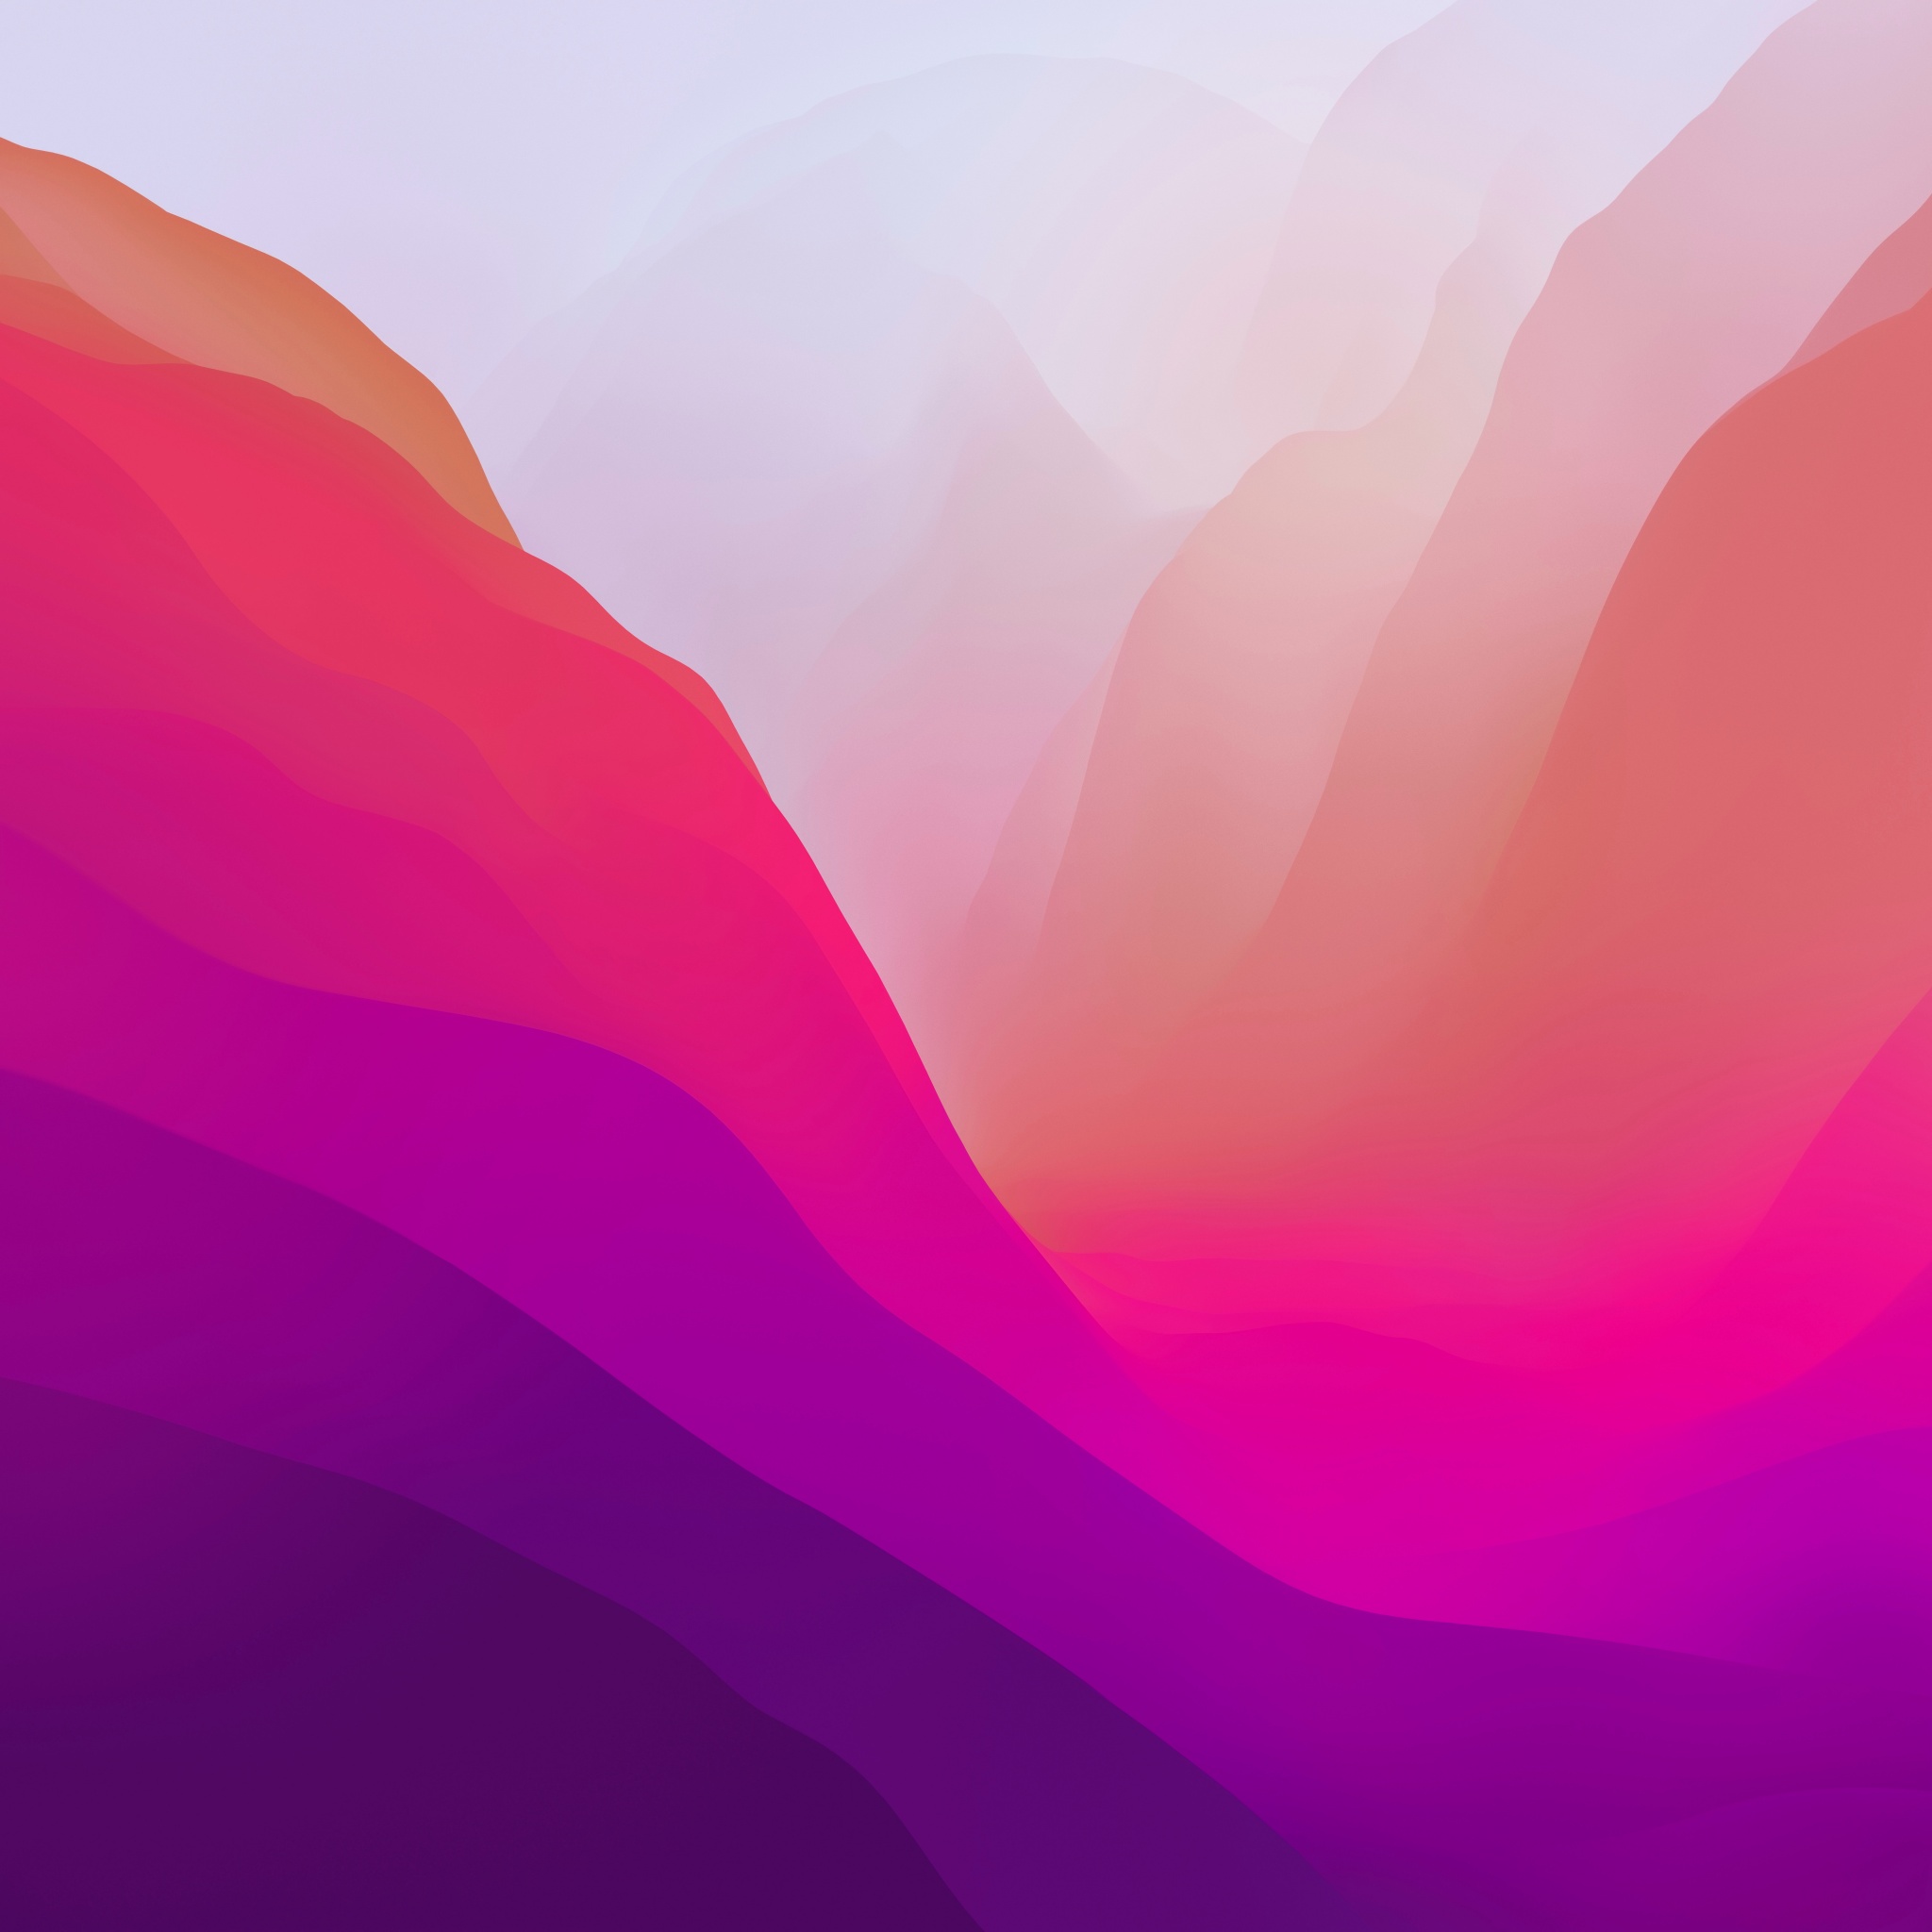 Hình nền macOS Monterey màu hồng gradient sáng 4K sẽ nâng cao sự tinh tế và hiện đại cho màn hình của bạn. Với hiệu ứng gradient sáng chuyển tiếp và màu hồng mềm mại, nó sẽ làm cho màn hình của bạn trở nên đẹp mắt và tươi sáng hơn.